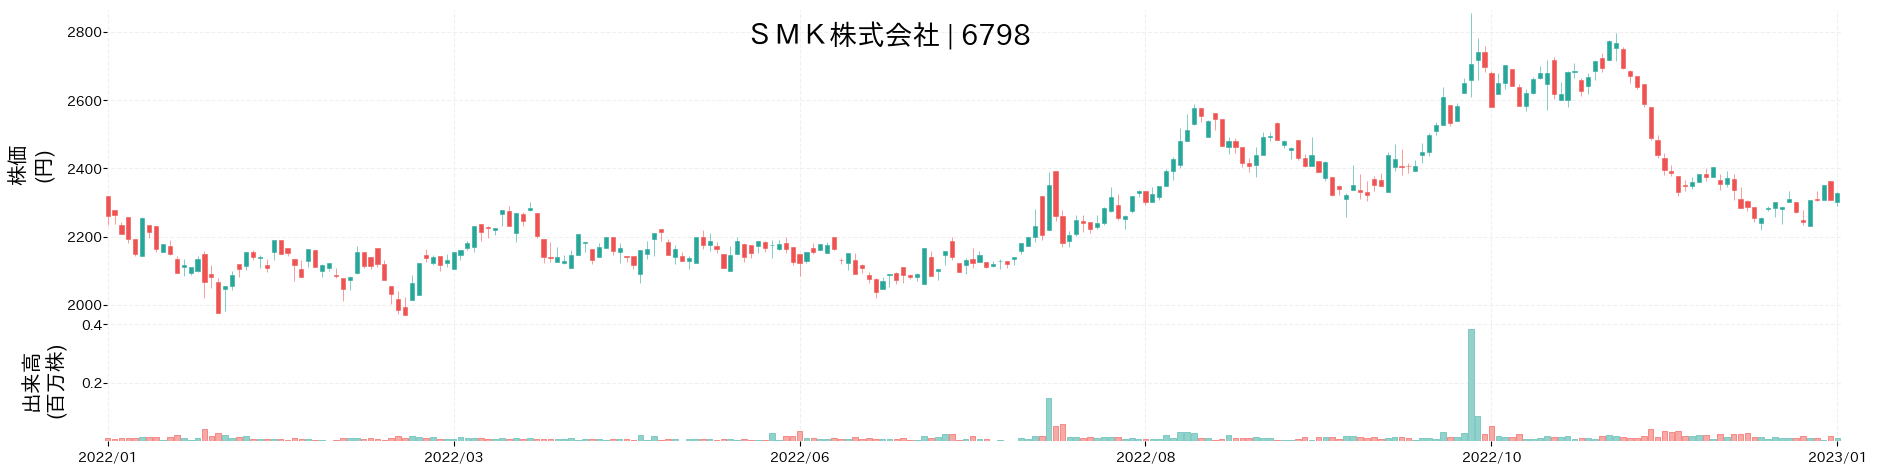 SMKの株価推移(2022)